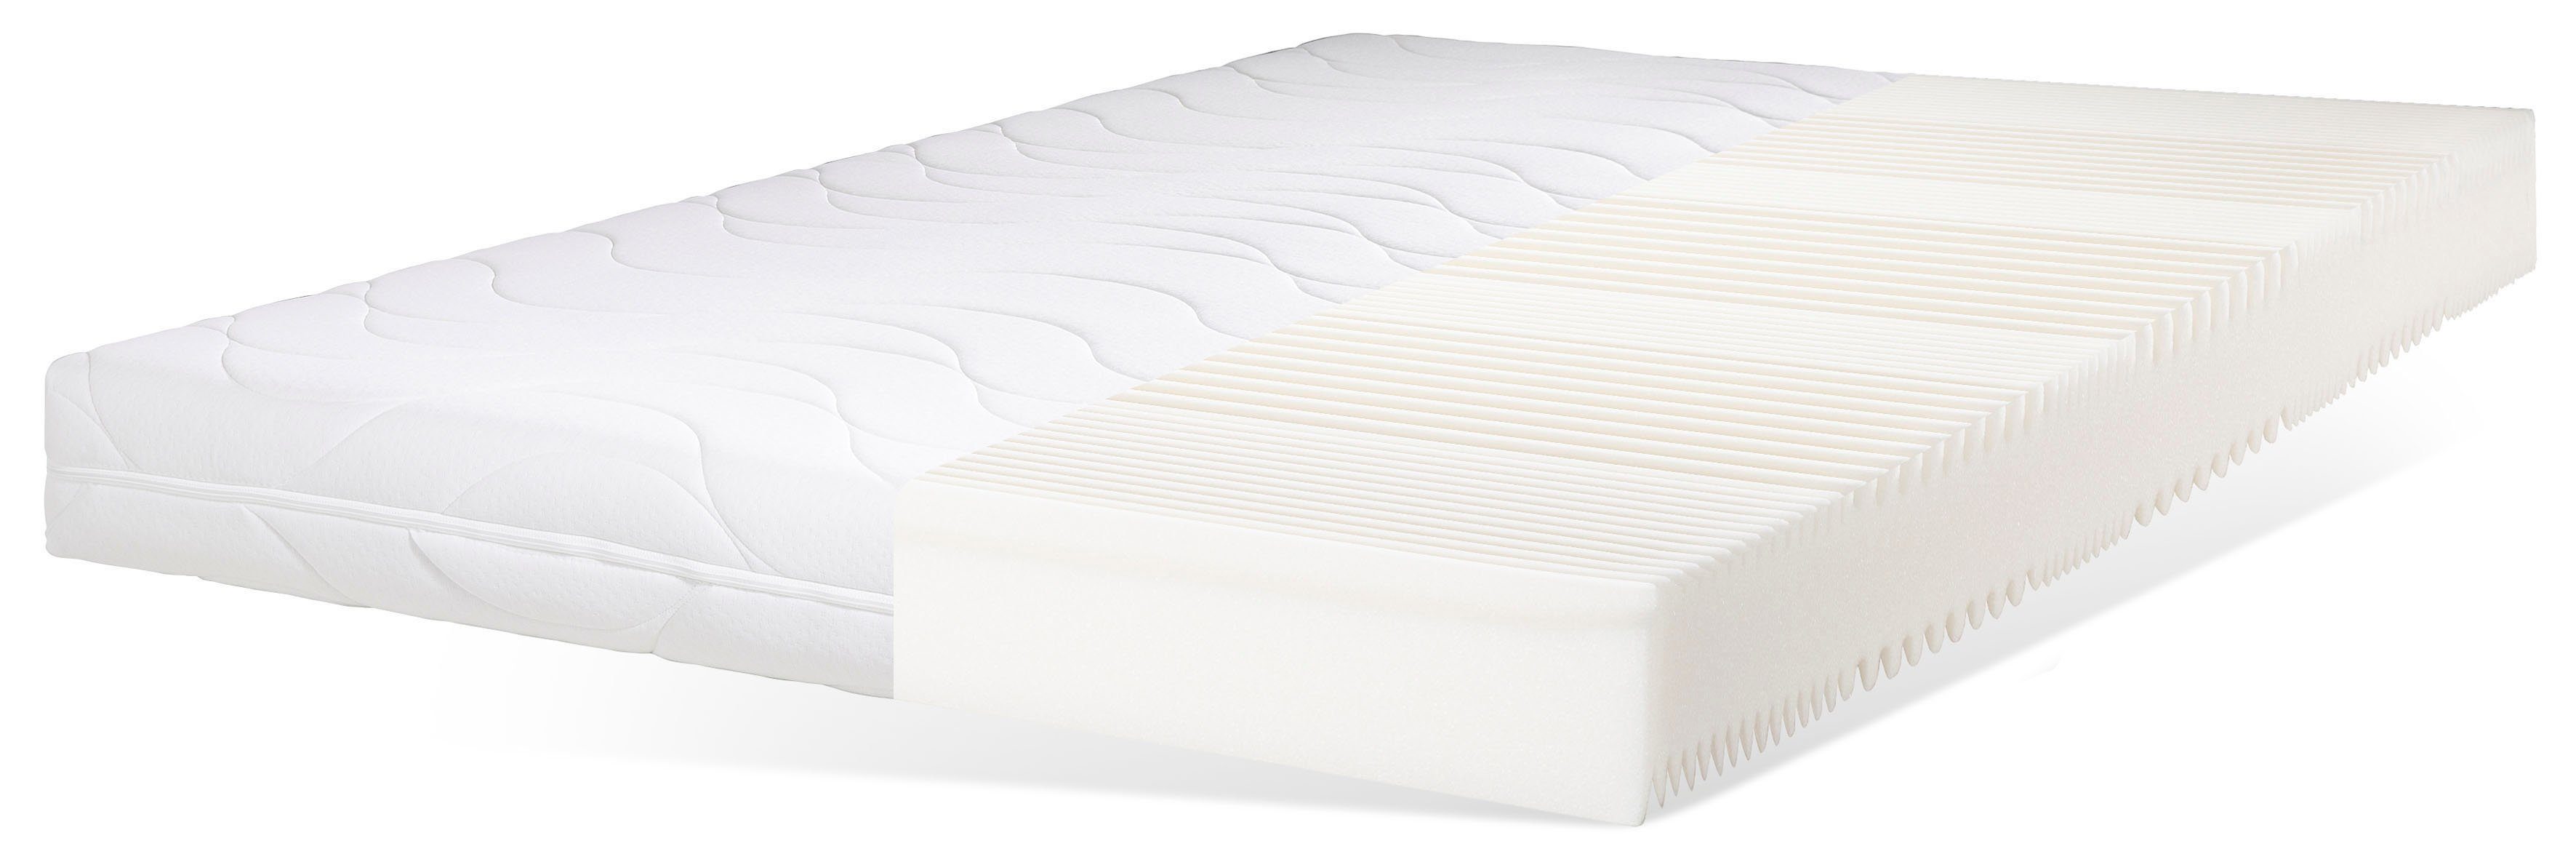 Komfortschaummatratze »Emmerik«, OTTO products, 16 cm hoch, Raumgewicht:  30, Matratze mit nachhaltigem Matratzenbezug zum Schutz der Umwelt